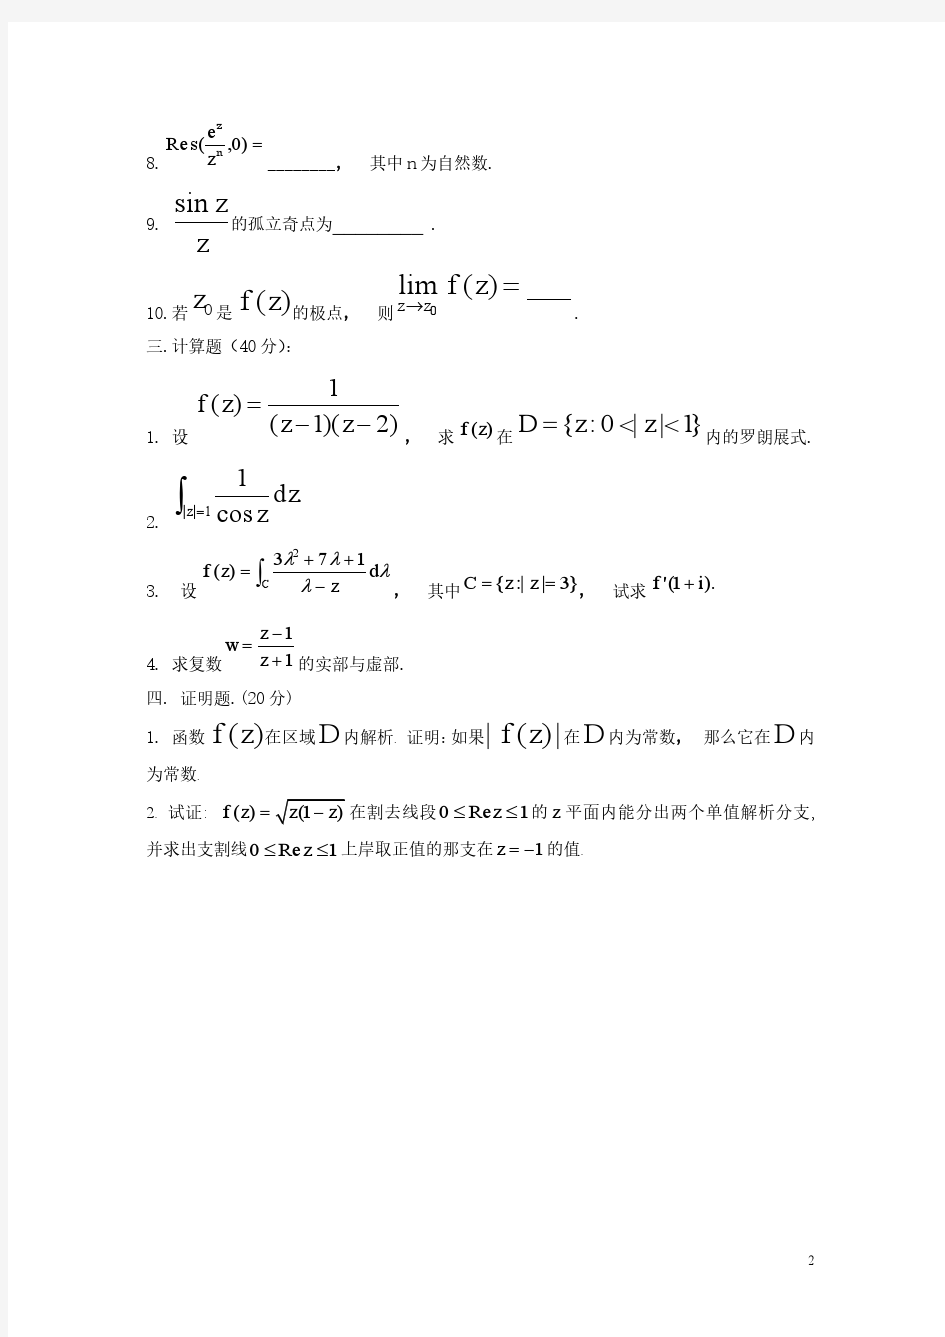 四川大学复变函数练习题